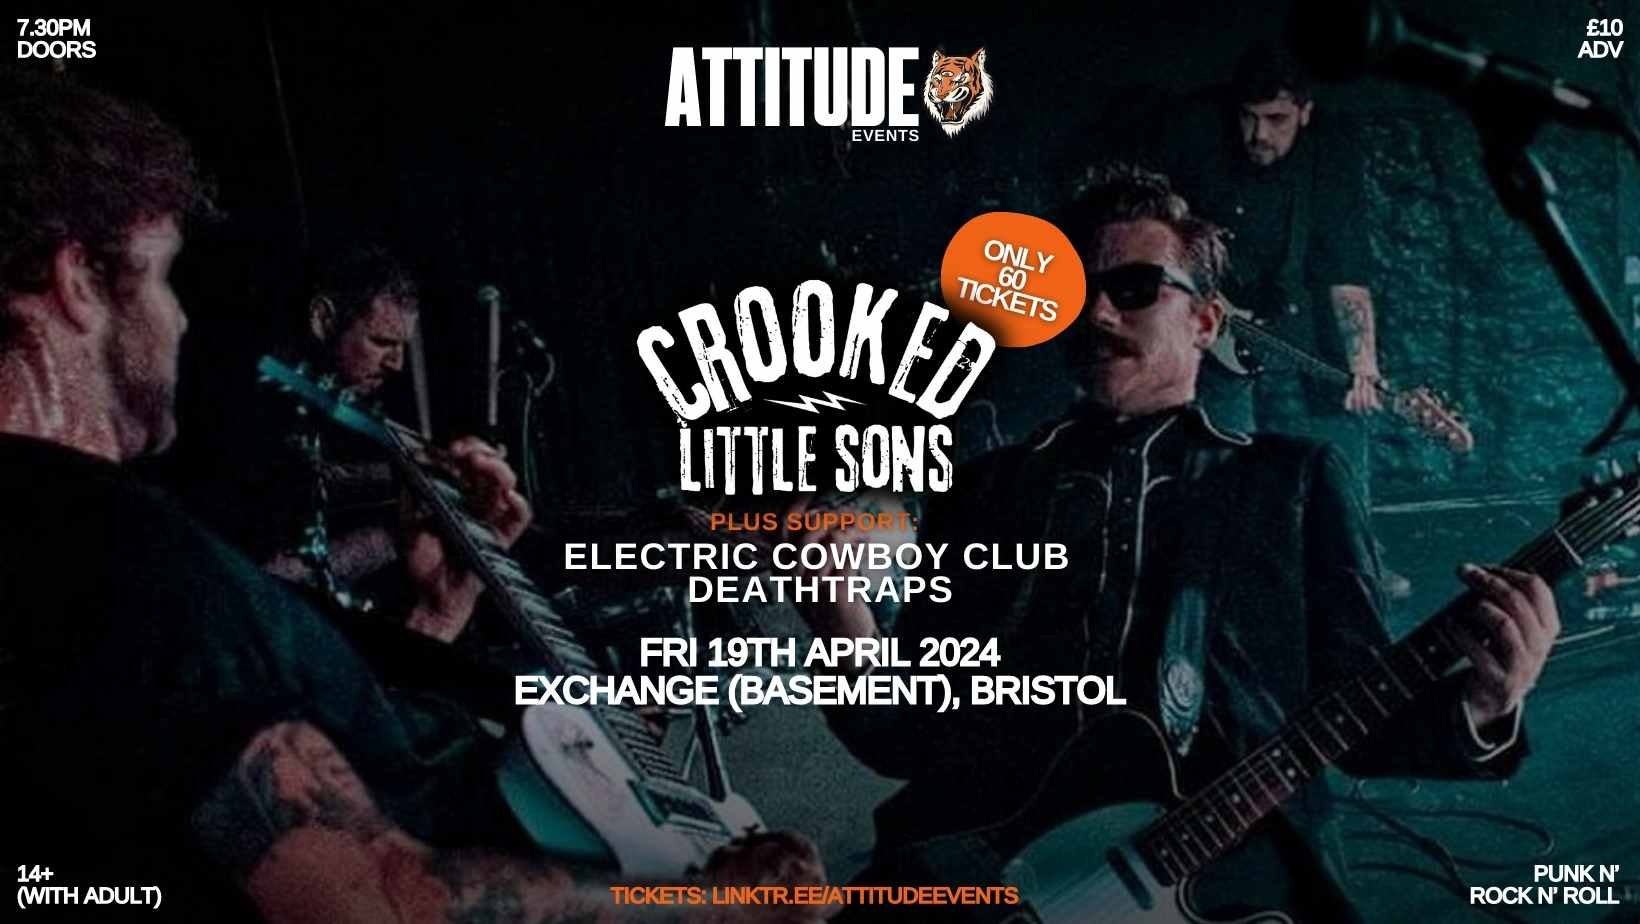 Crooked Little Sons ✘ Electric Cowboy Club ✘ Deathtraps @ Exchange, Bristol